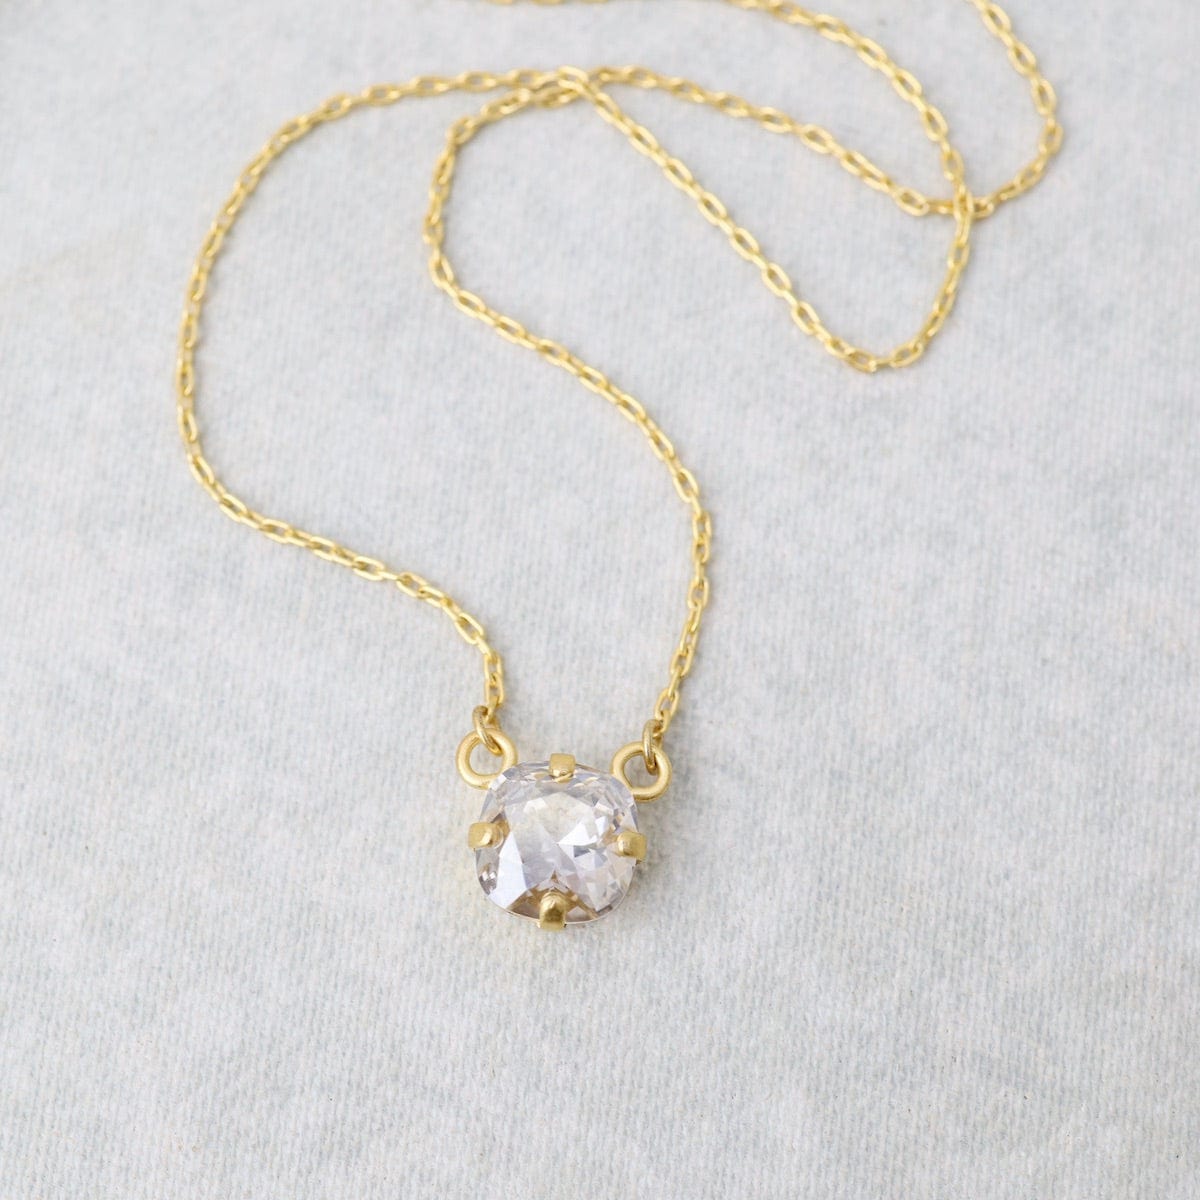 NKL-JM Single Swaovski Crystal Necklace Moonlight - Gold